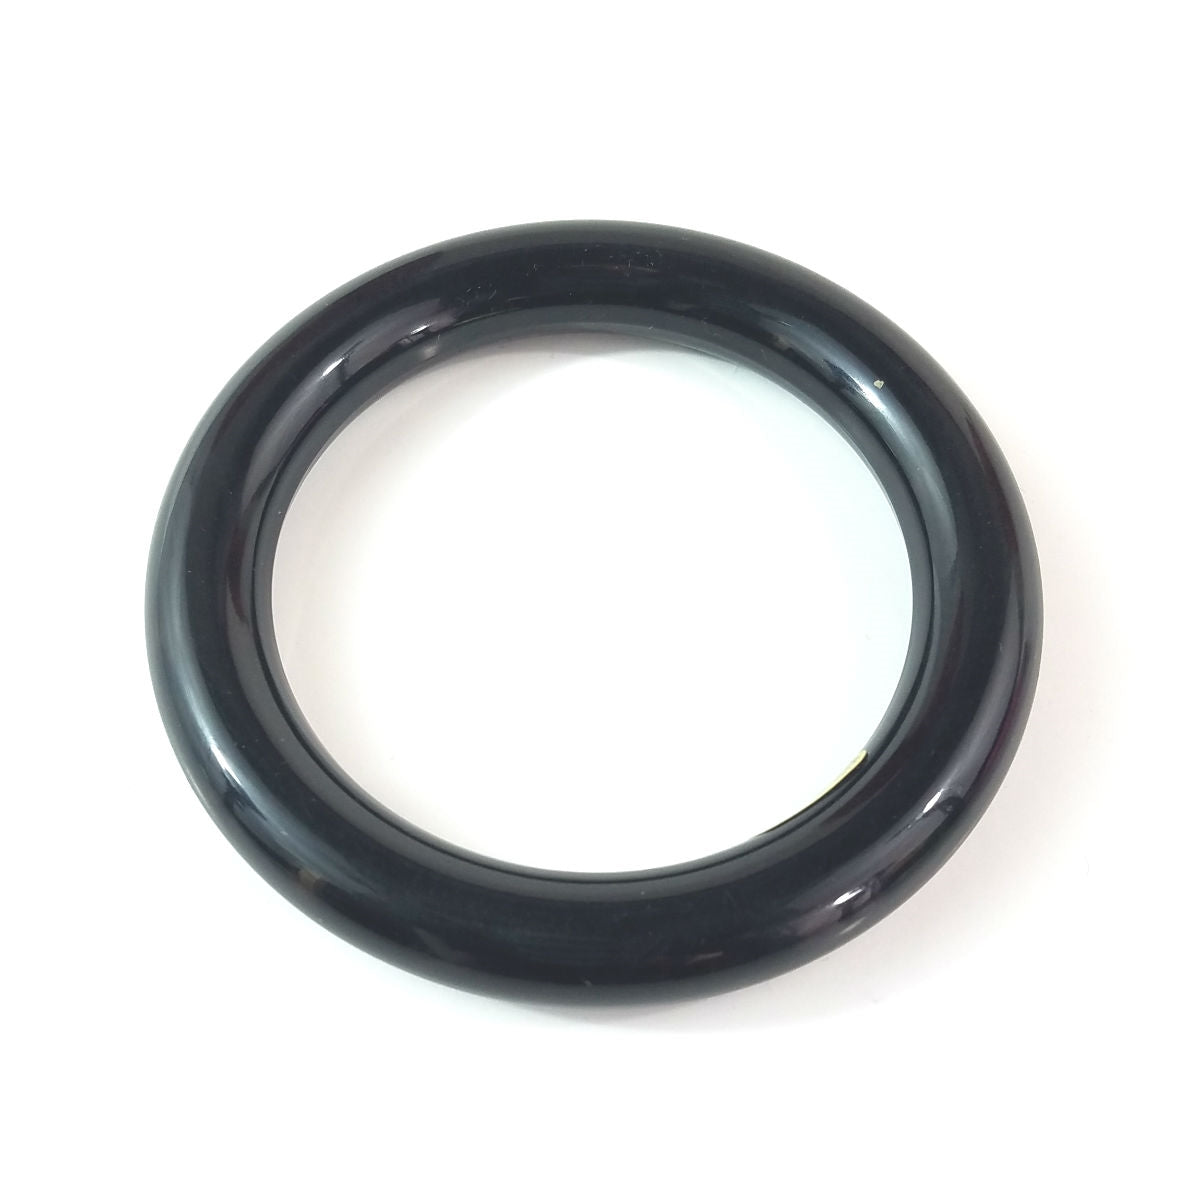 5/8" wide shiny plastic tubular shape bangle in basic black